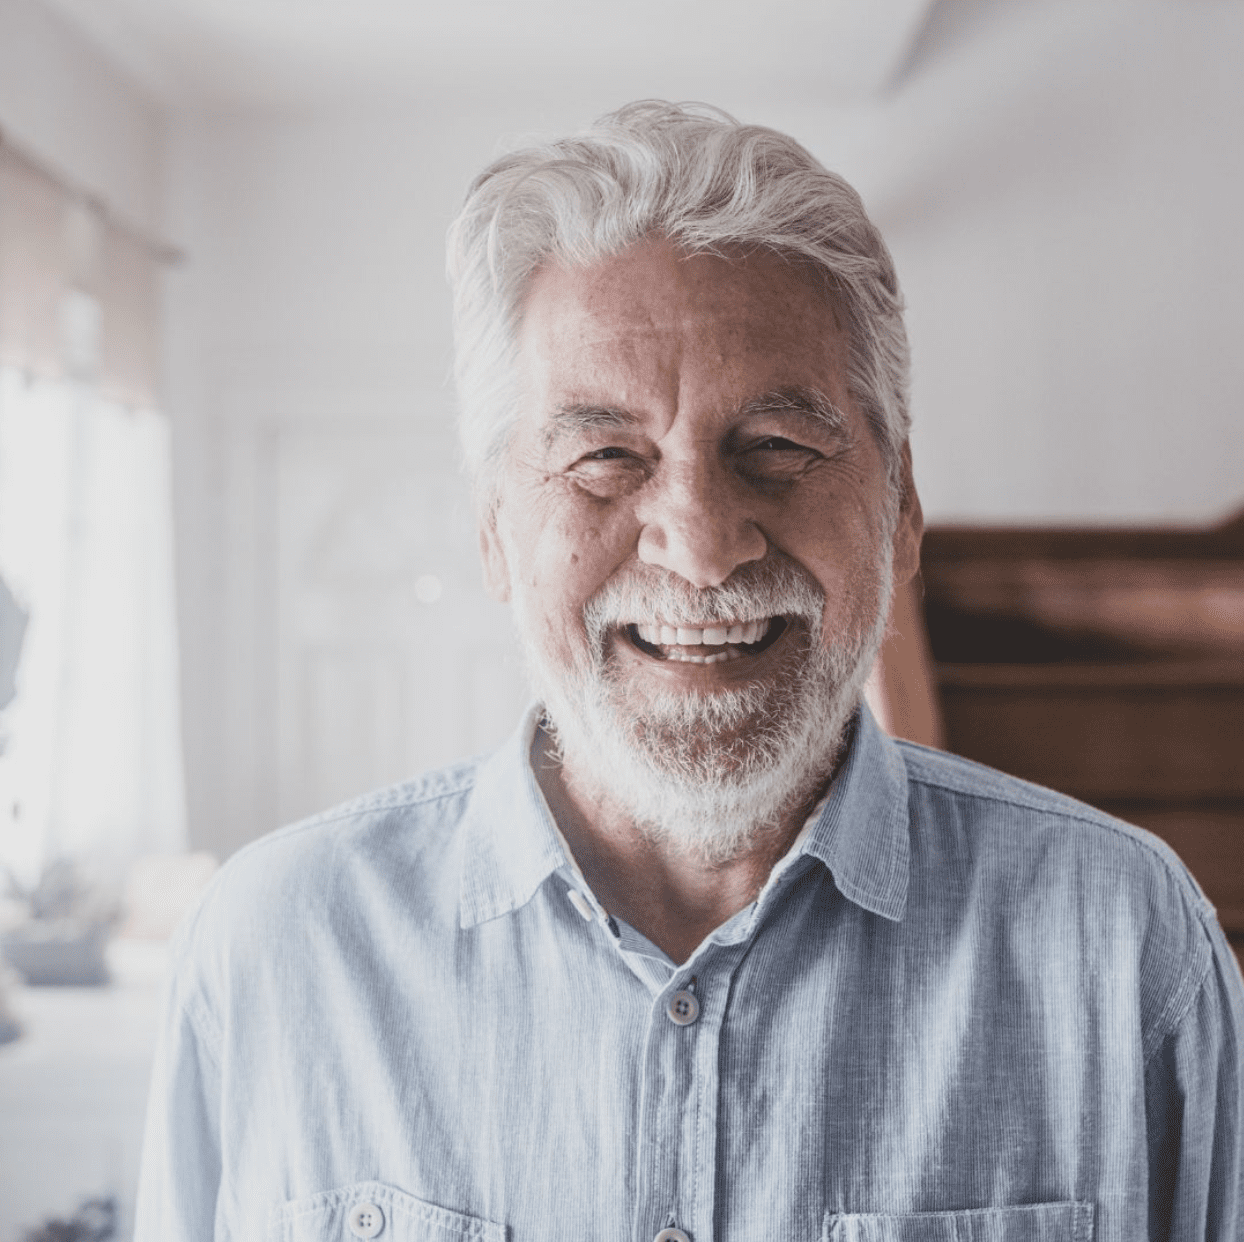 Elderly man smiling after dental crown procedure